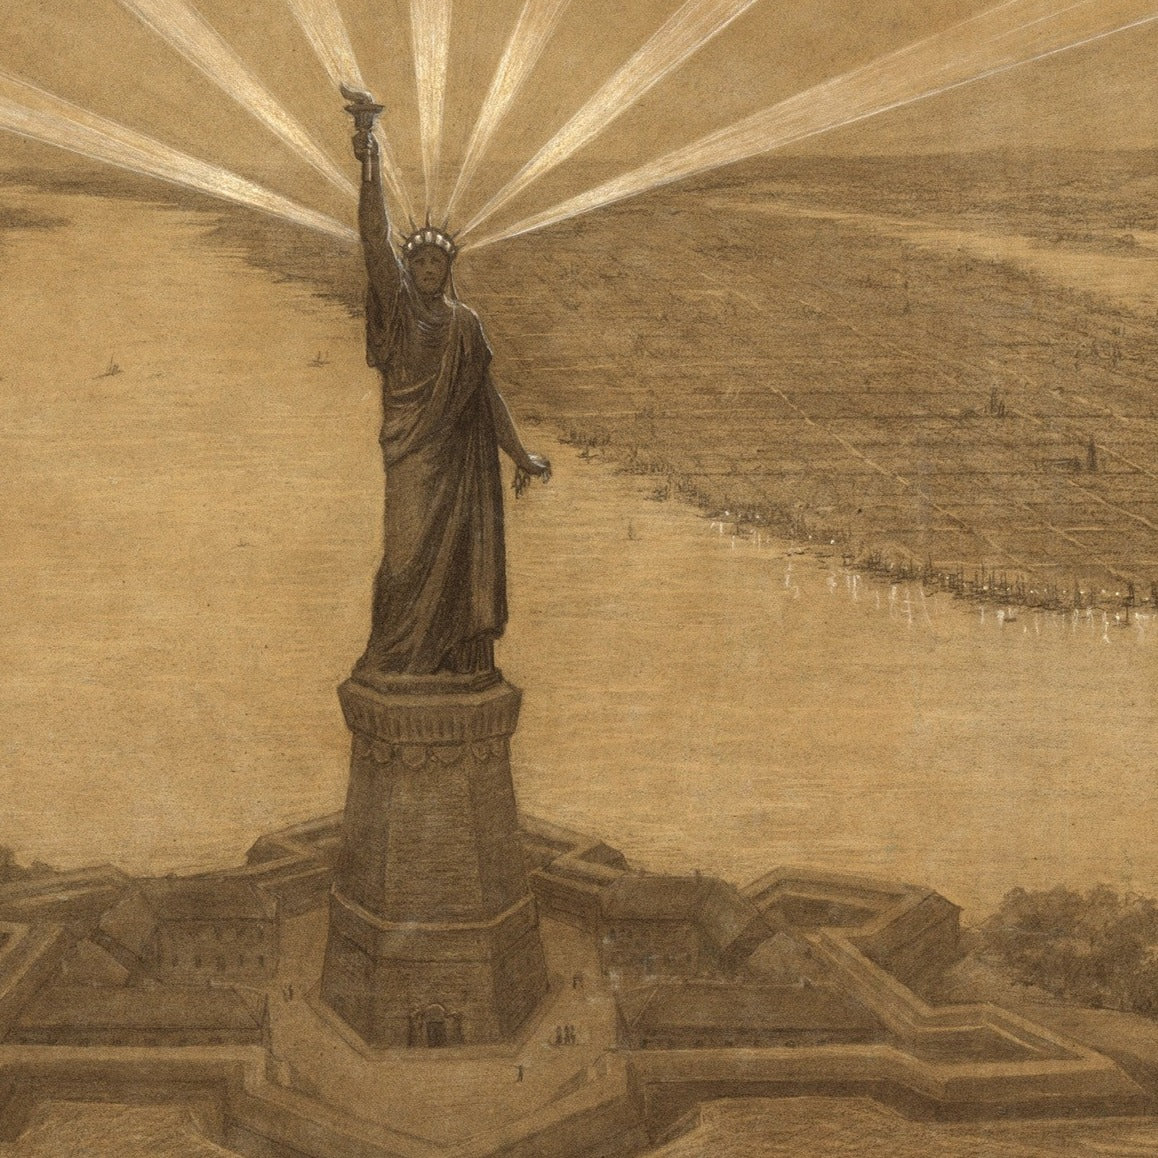 The Statue of Liberty Illuminating the World Bartholdi Statue of Liberty Presentation Drawing